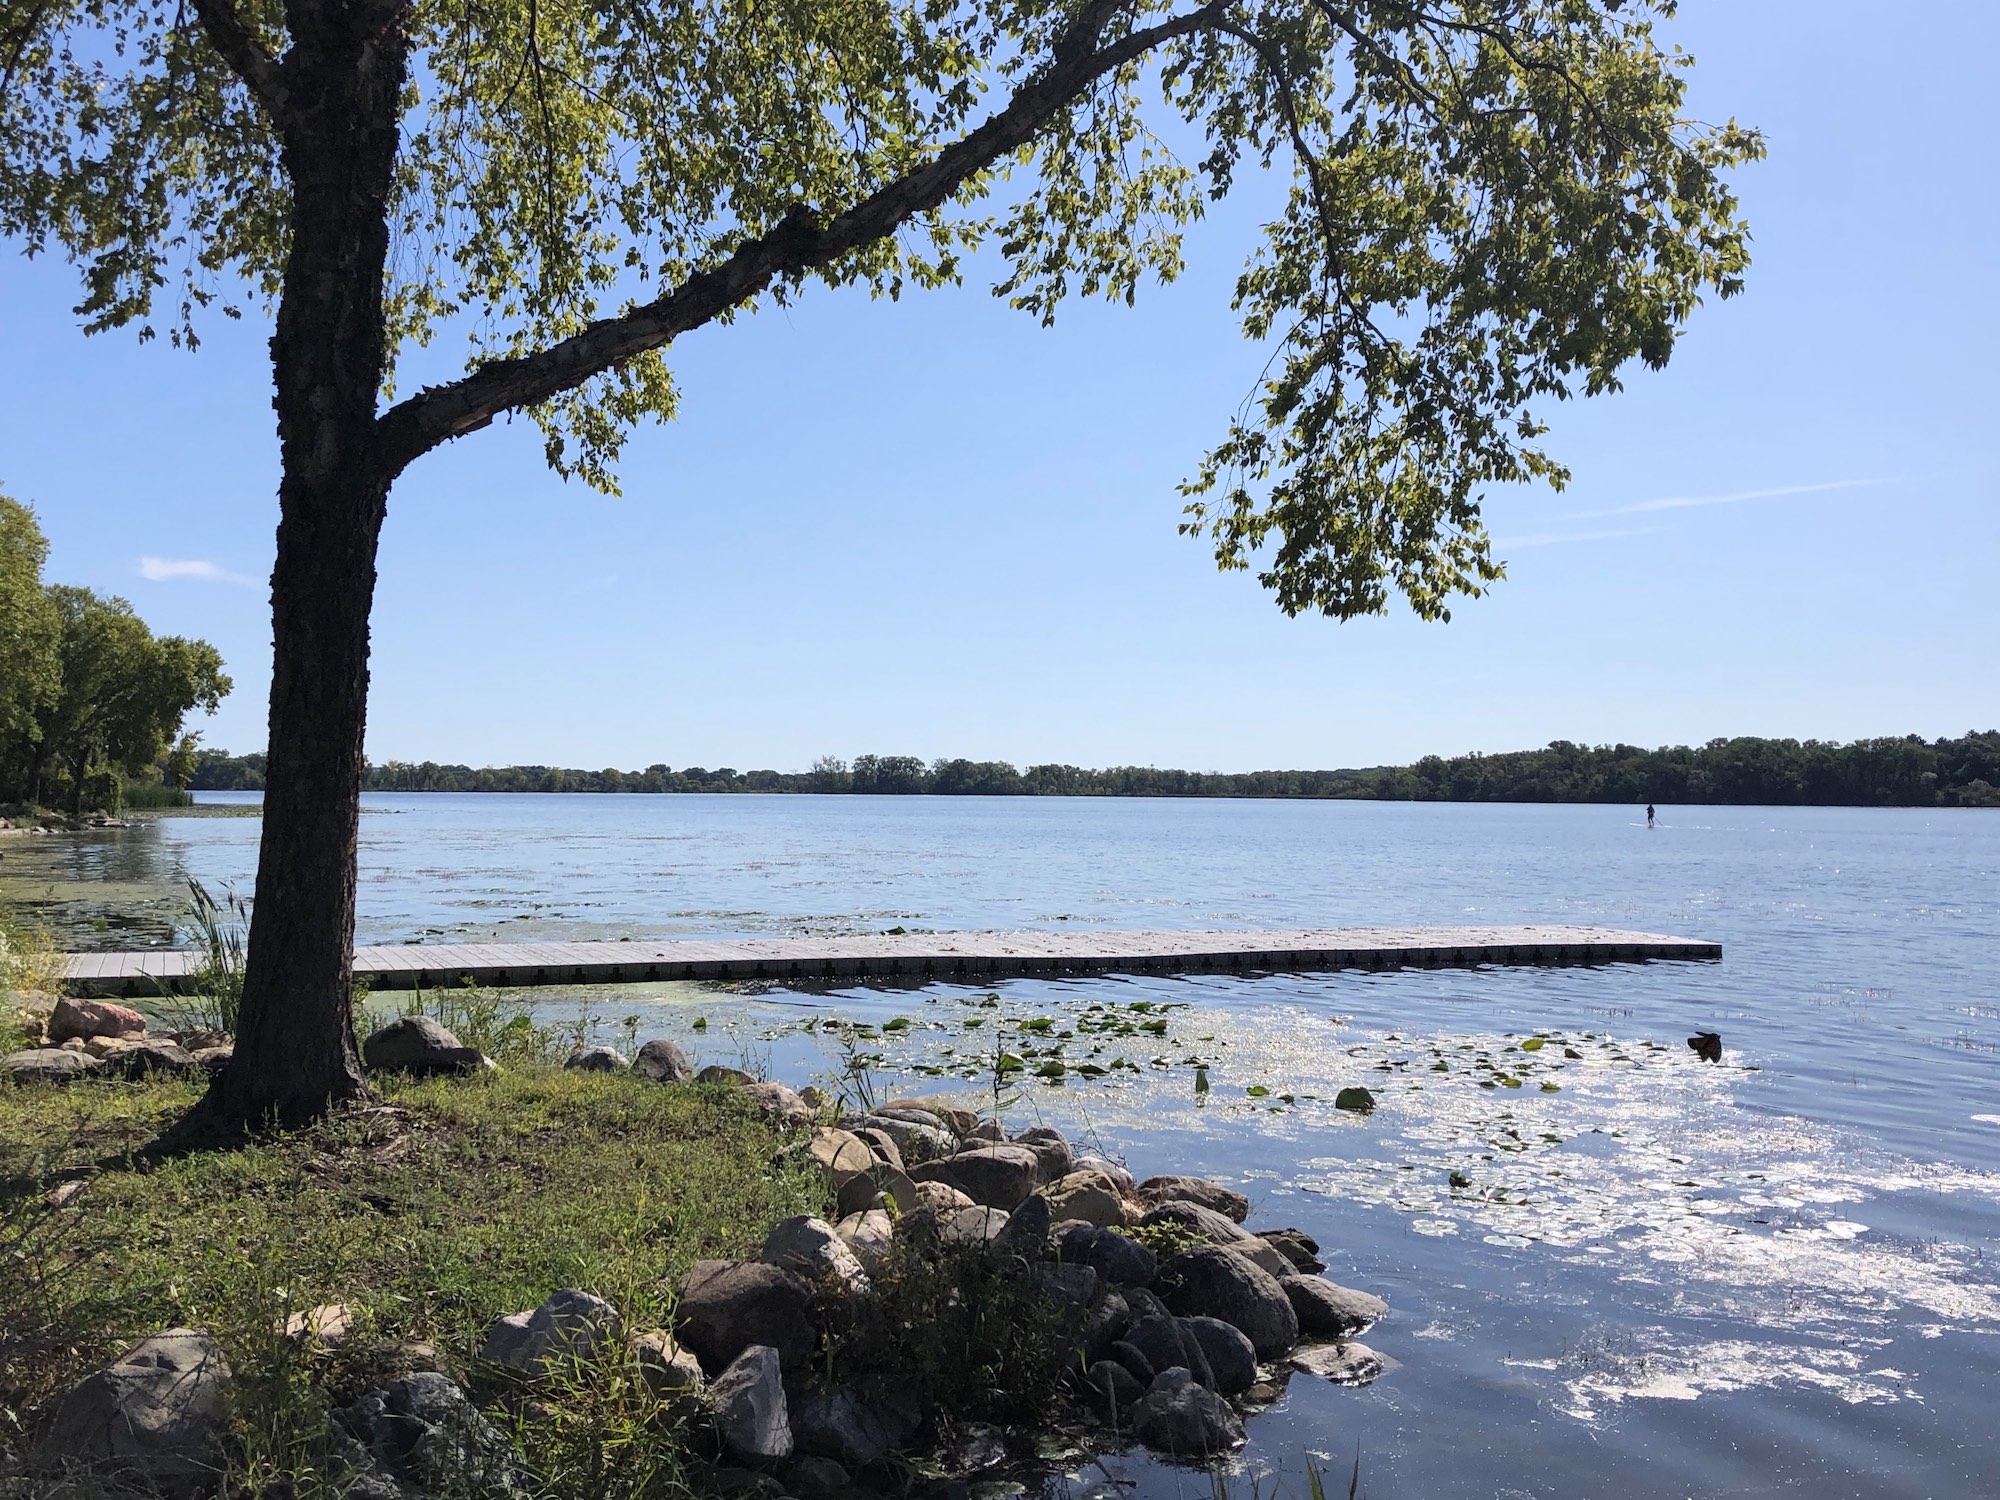 Lake Wingra on September 14, 2019.